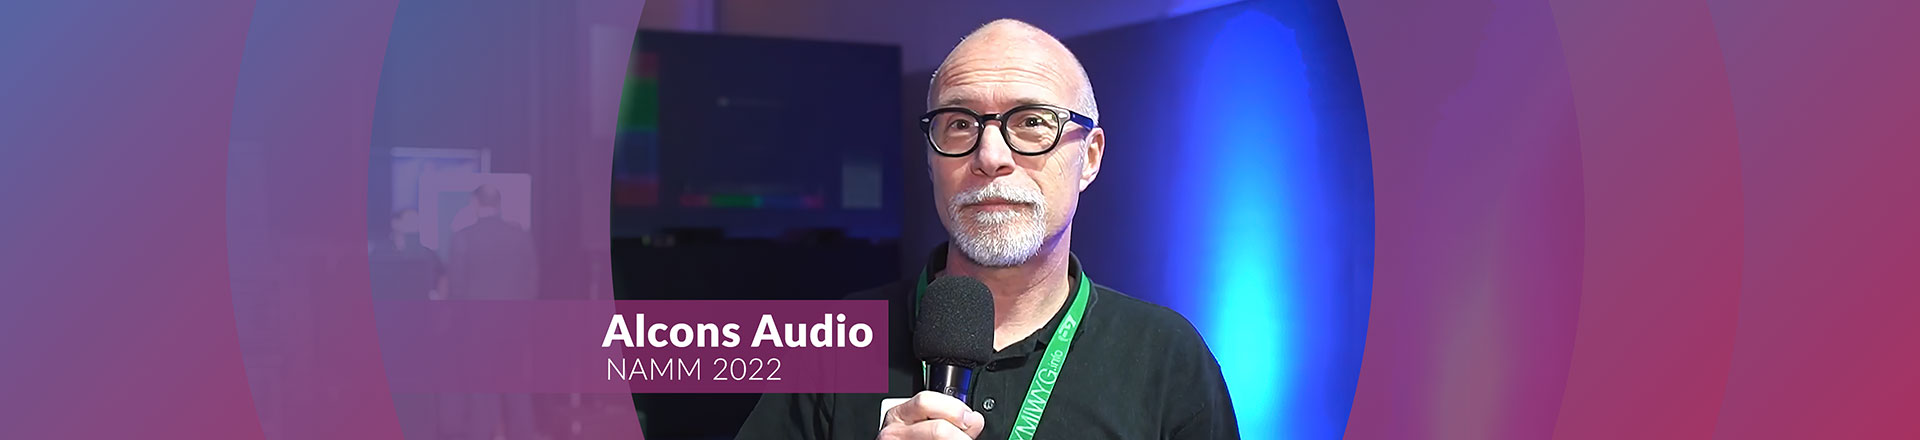 Alcons Audio z nowym nagłośnieniem na NAMM 2022